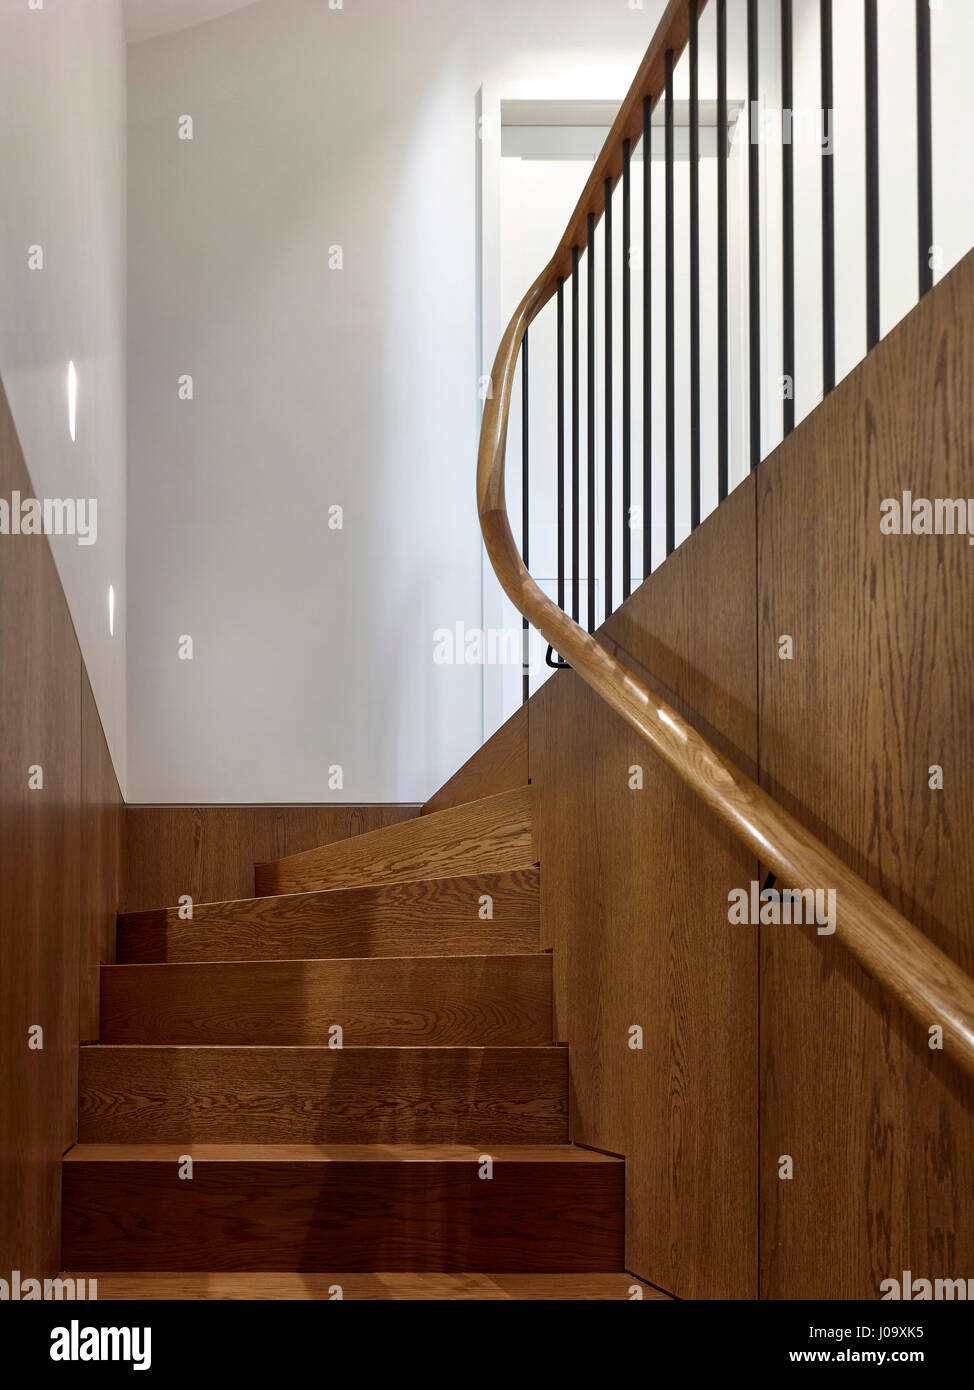 Treppe. Hampstead Teiche House, London, Vereinigtes Königreich. Architekt: Steif + Trevillion Architekten, 2016. Stockfoto